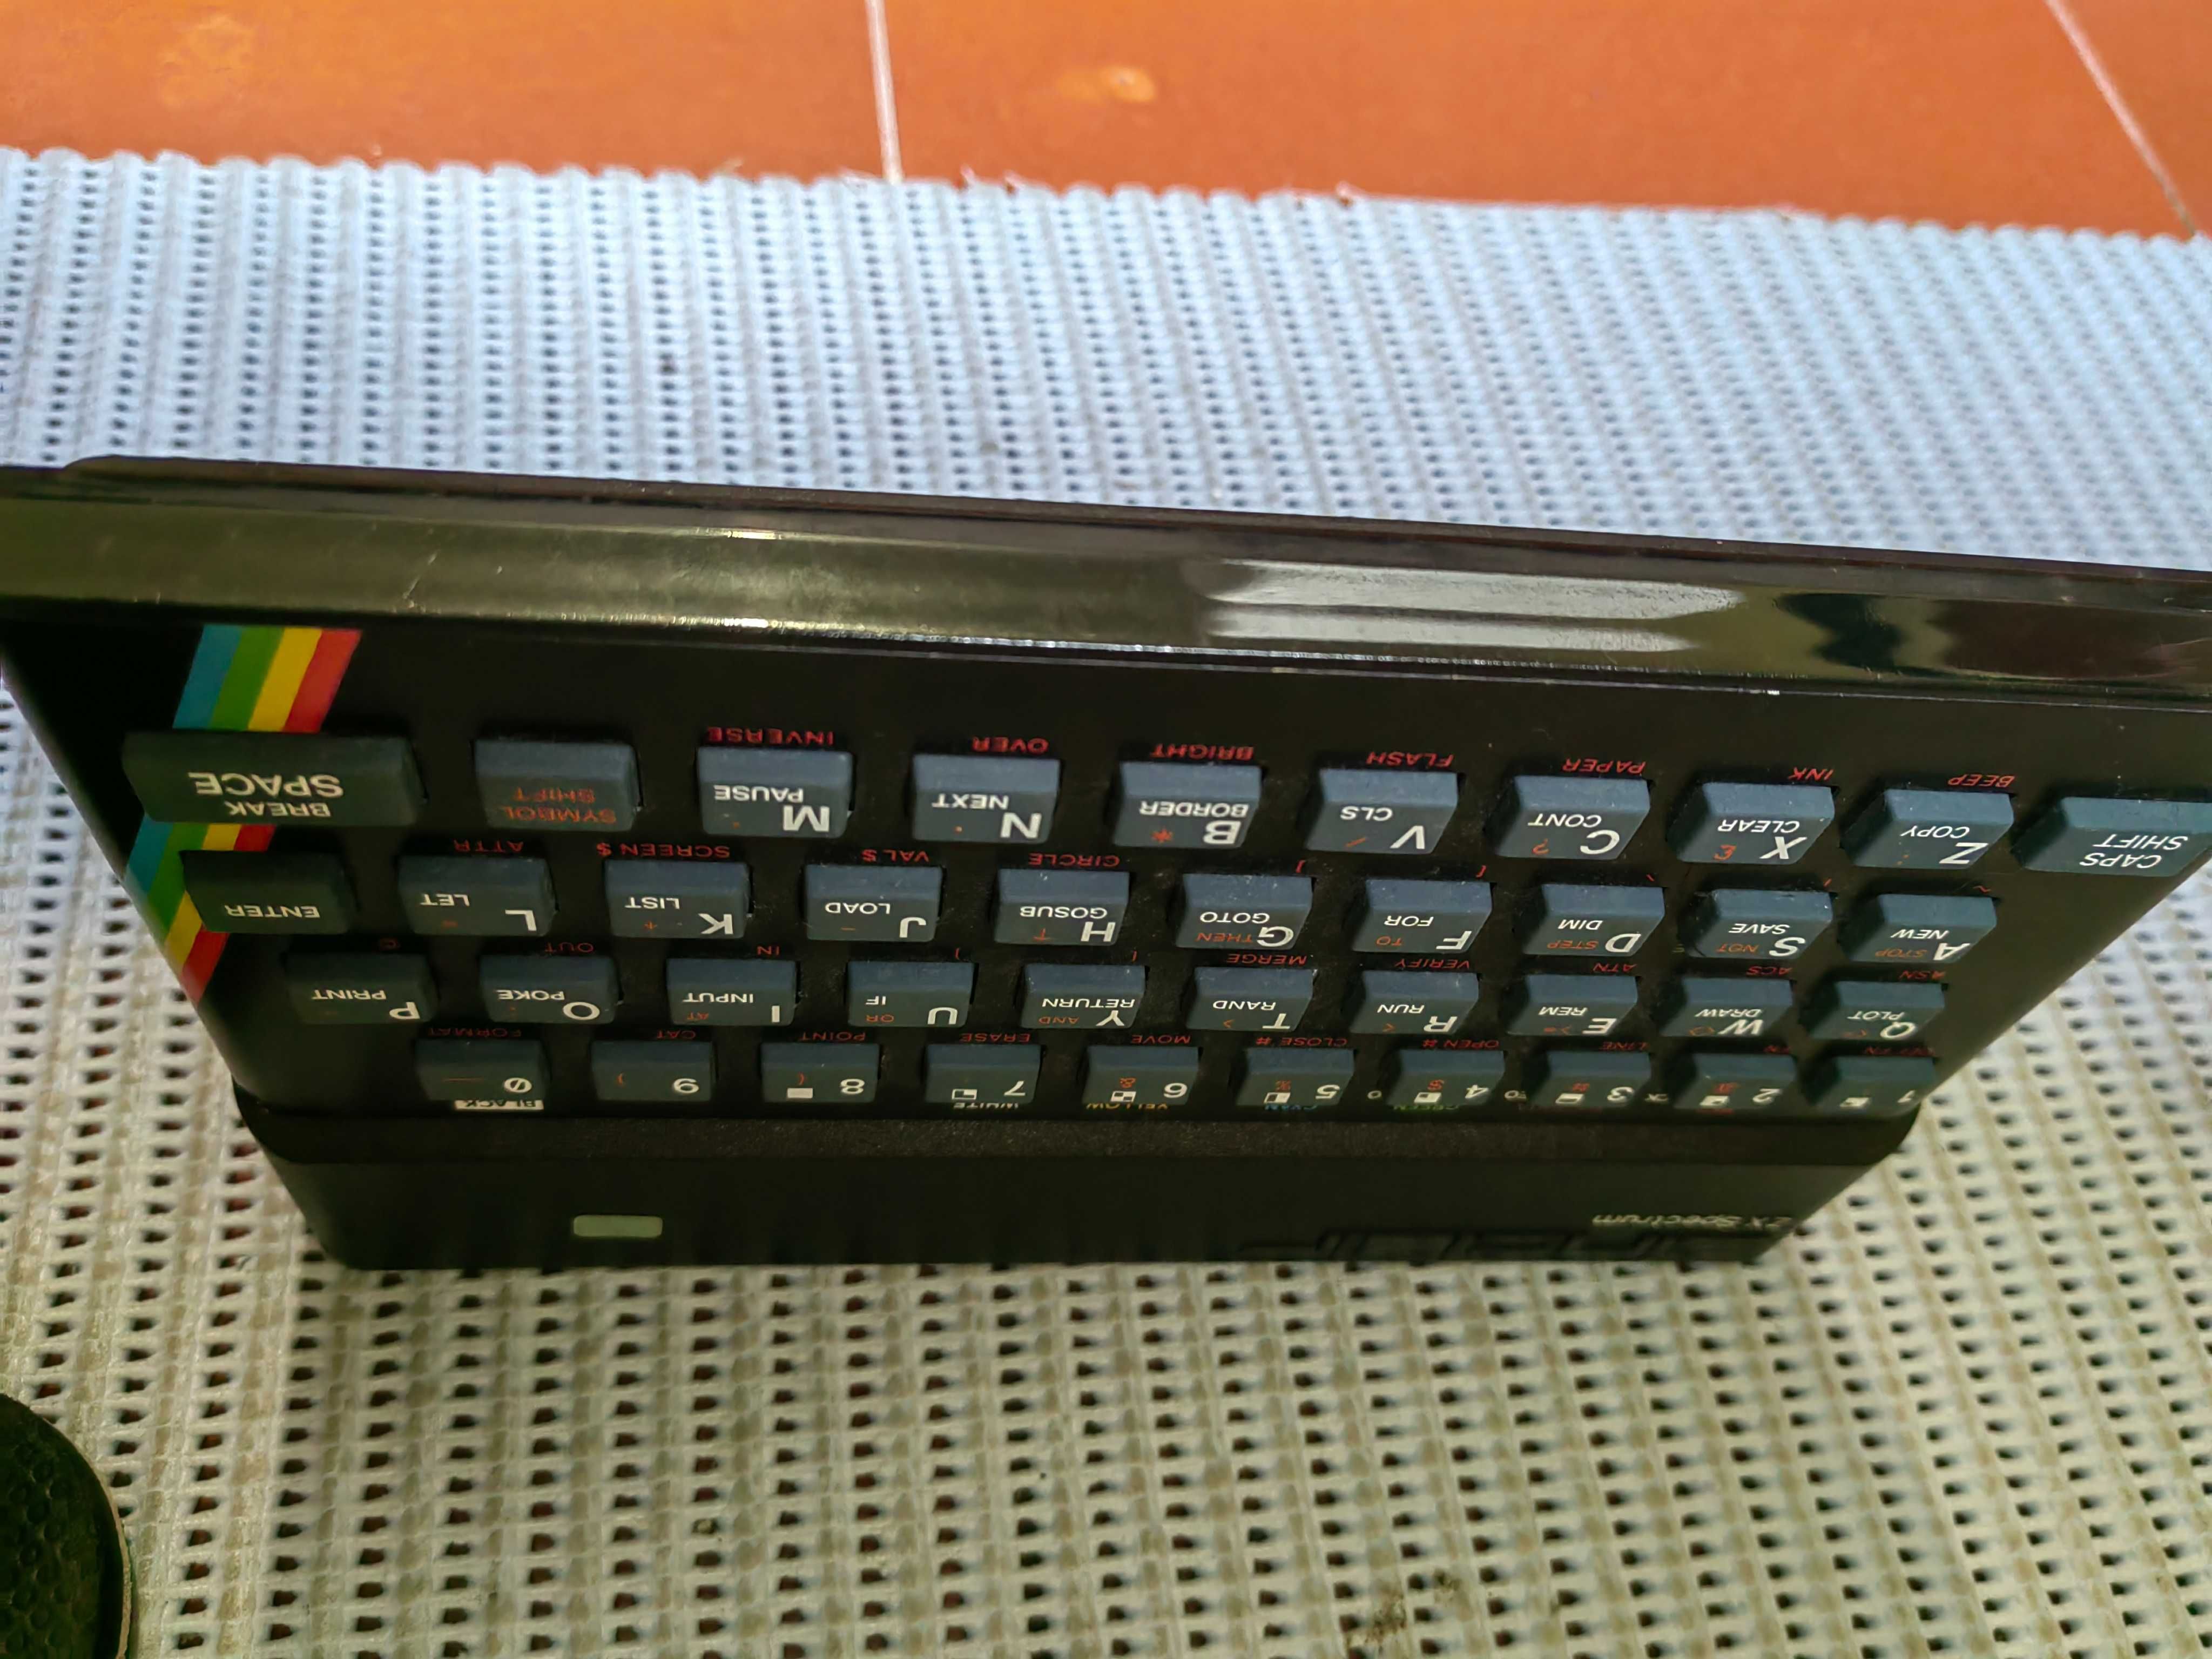 zx spectrum 48k computer